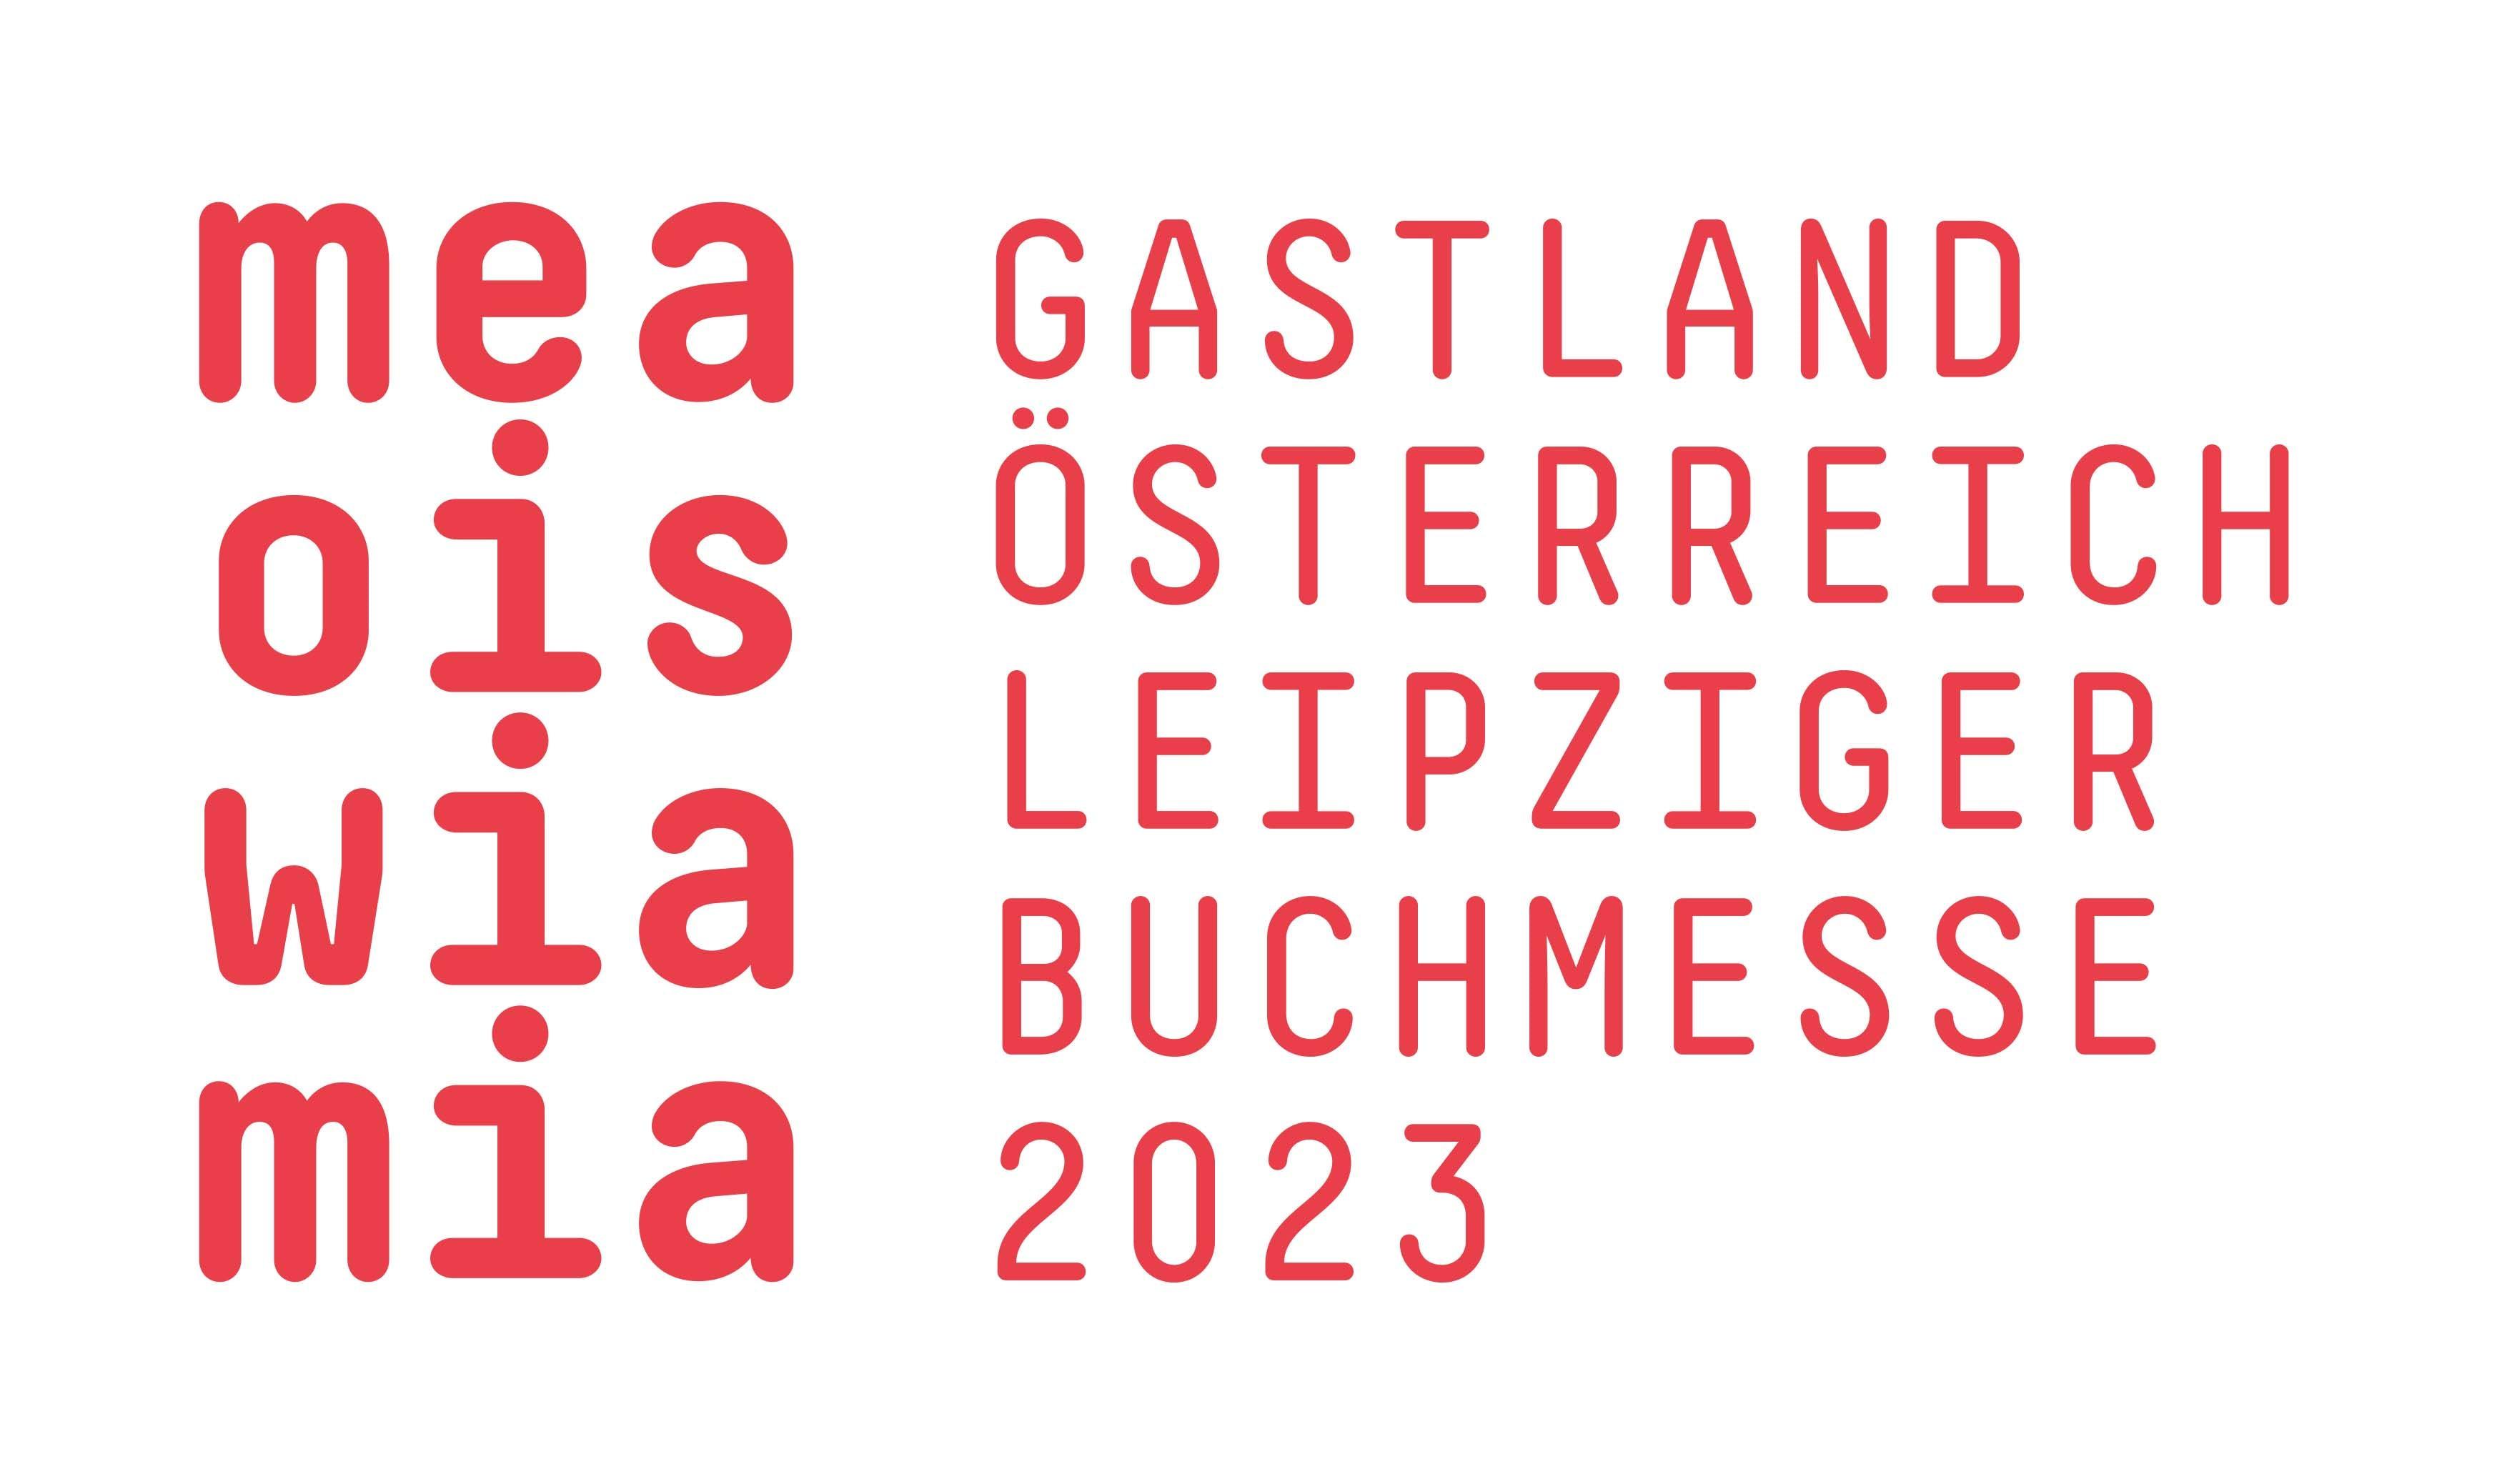 Bild: Gastland Österreich Leipziger Buchmesse 2023